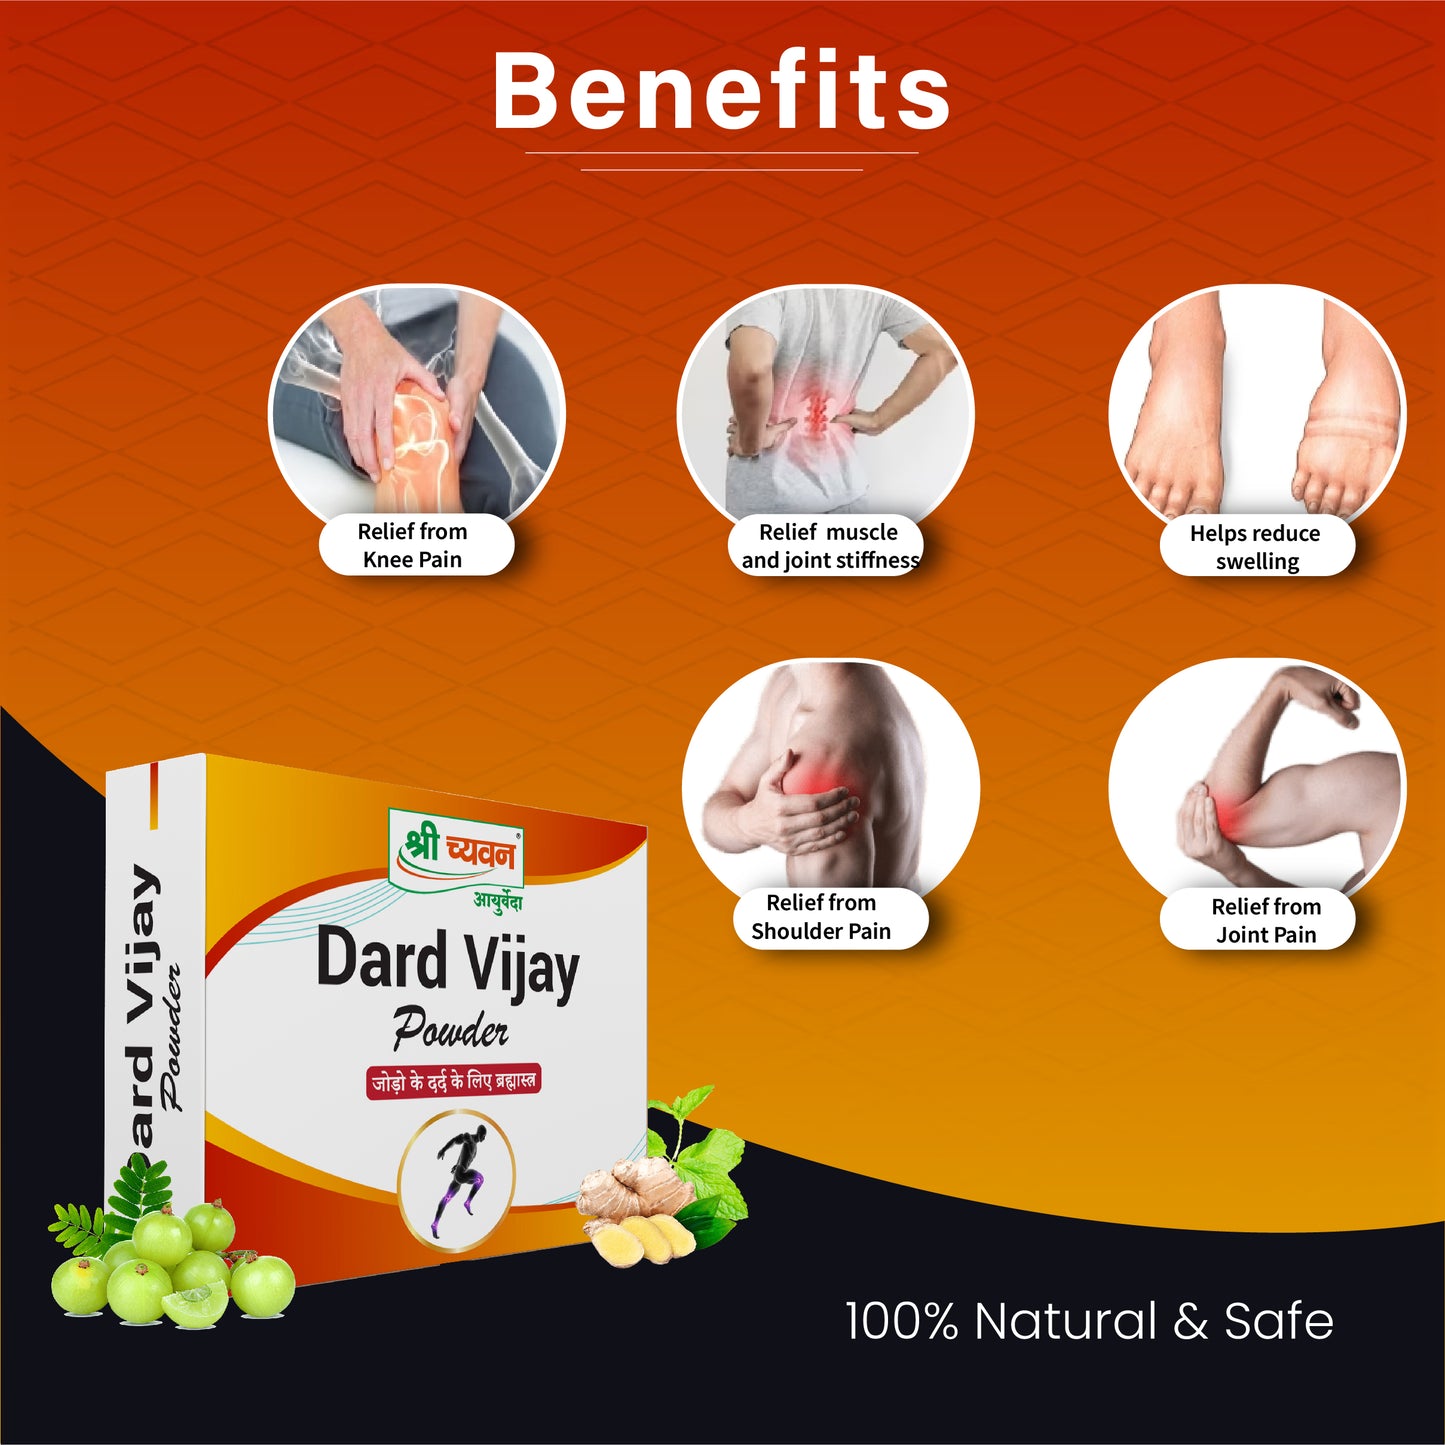 Dard Vijay Powder Benefits